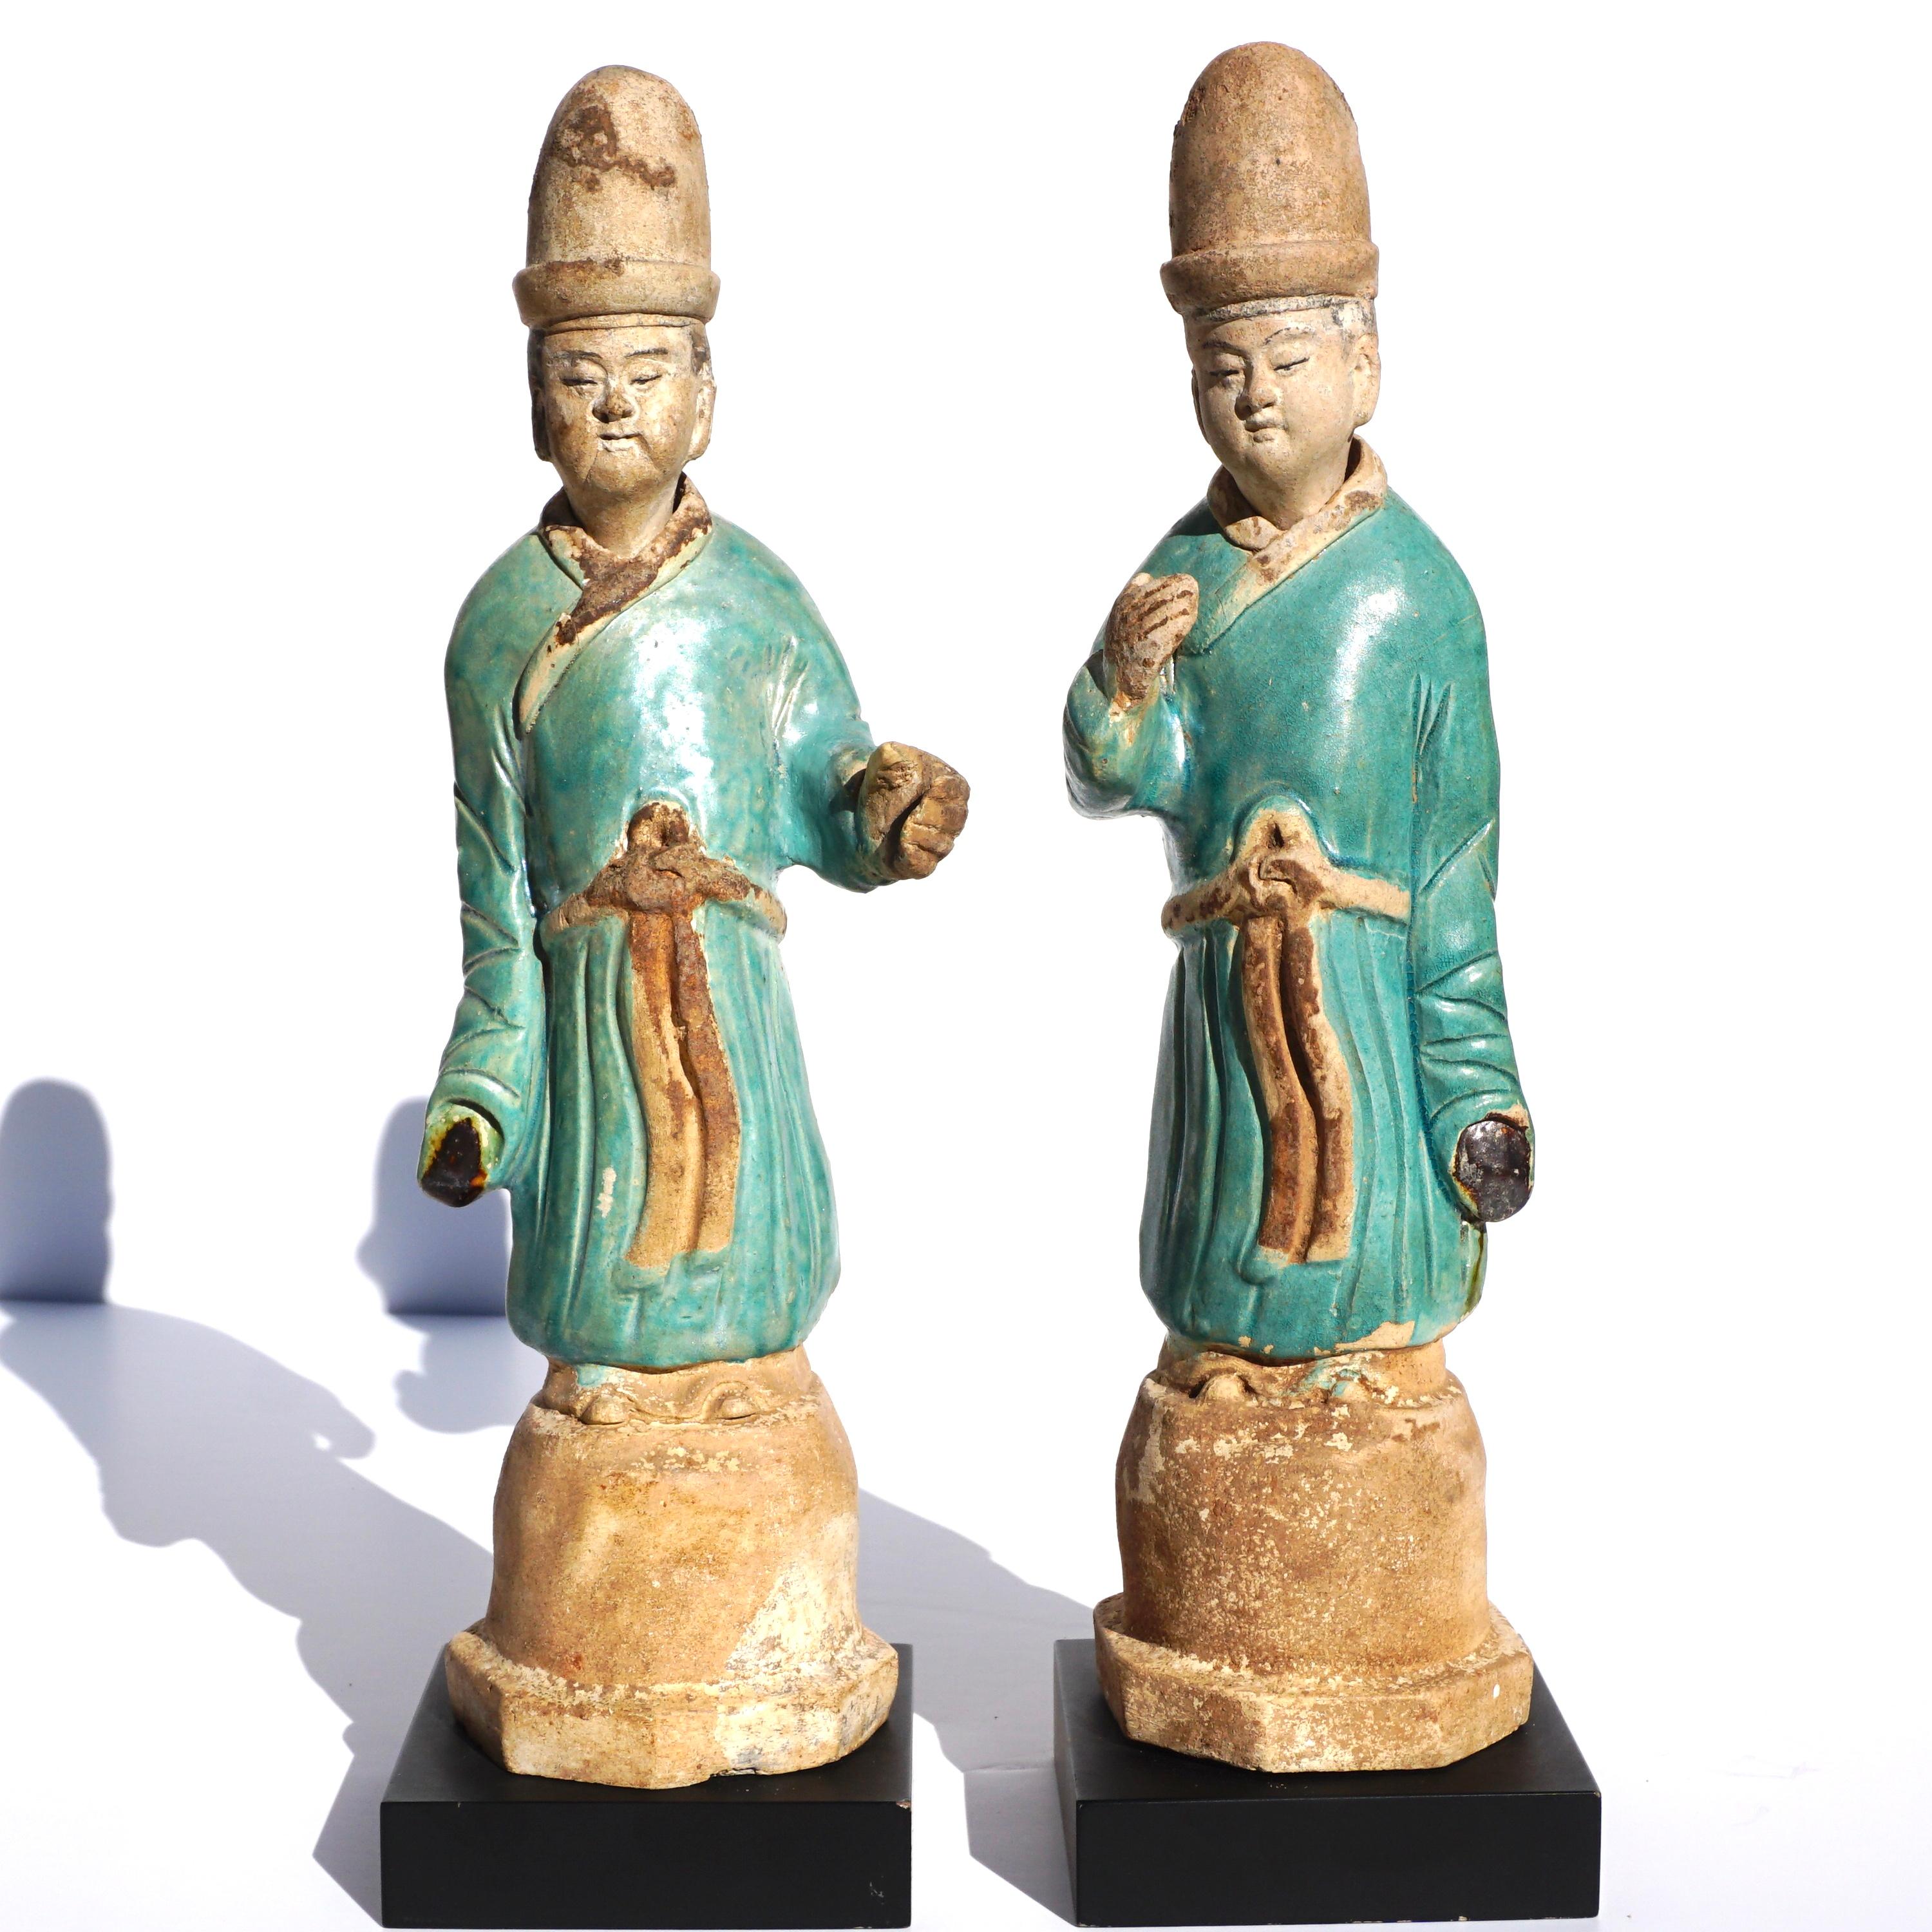 Paire de figurines en poterie à glaçure bleue de la dynastie Ming.
Vers 1500 ADS Dynastie Ming

J'ai possédé plus de 250 figurines du tombeau de Ming, dont plus de 80 figurines de dignitaires, et celles-ci sont rares en termes de couleur et de